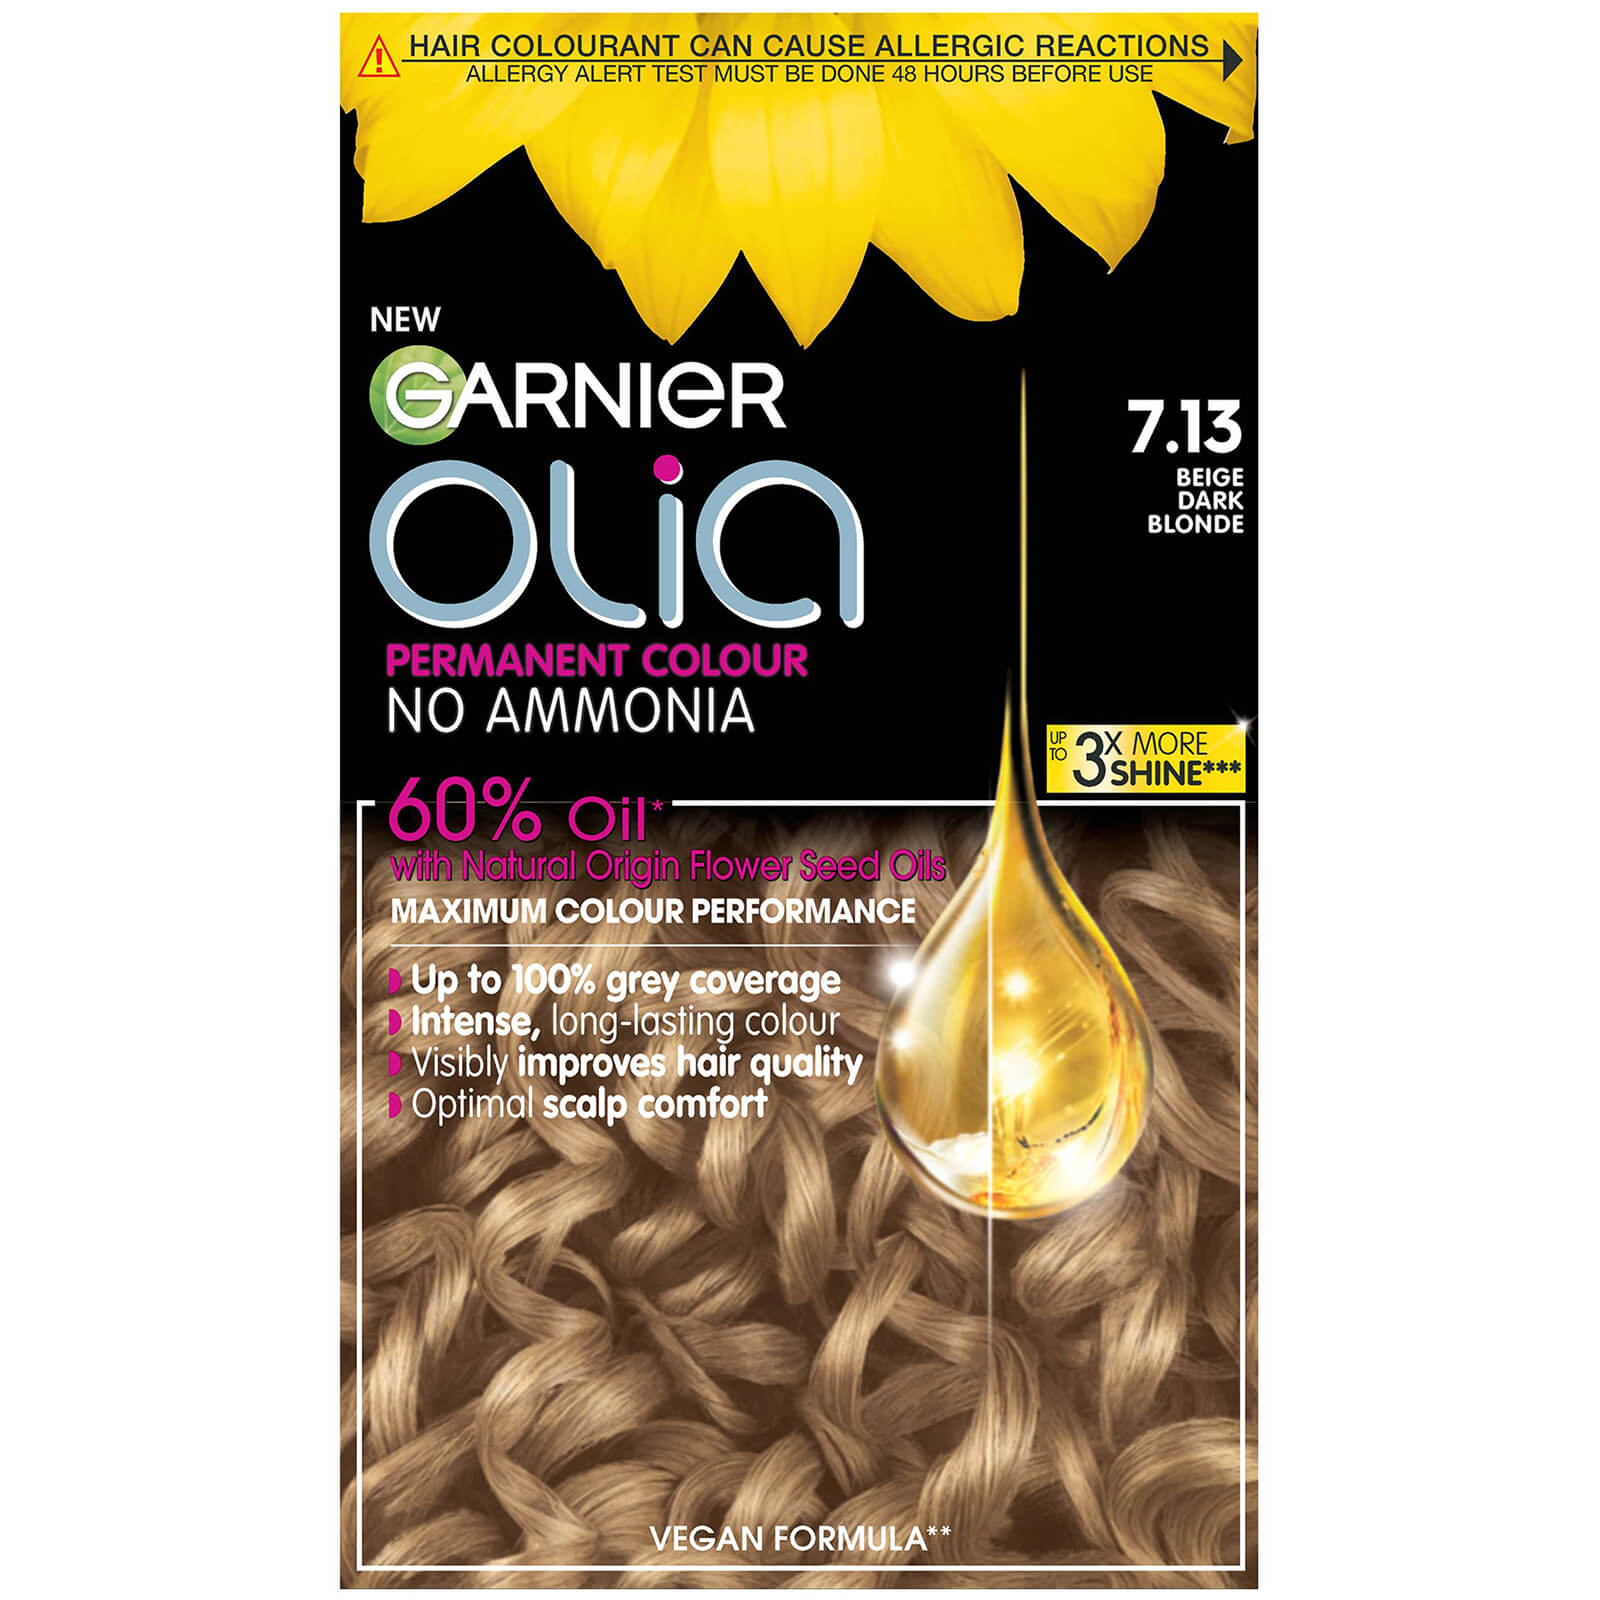 Garnier Olia Permanent Hair Dye (Various Shades) - 7.13 Dark Beige Blonde